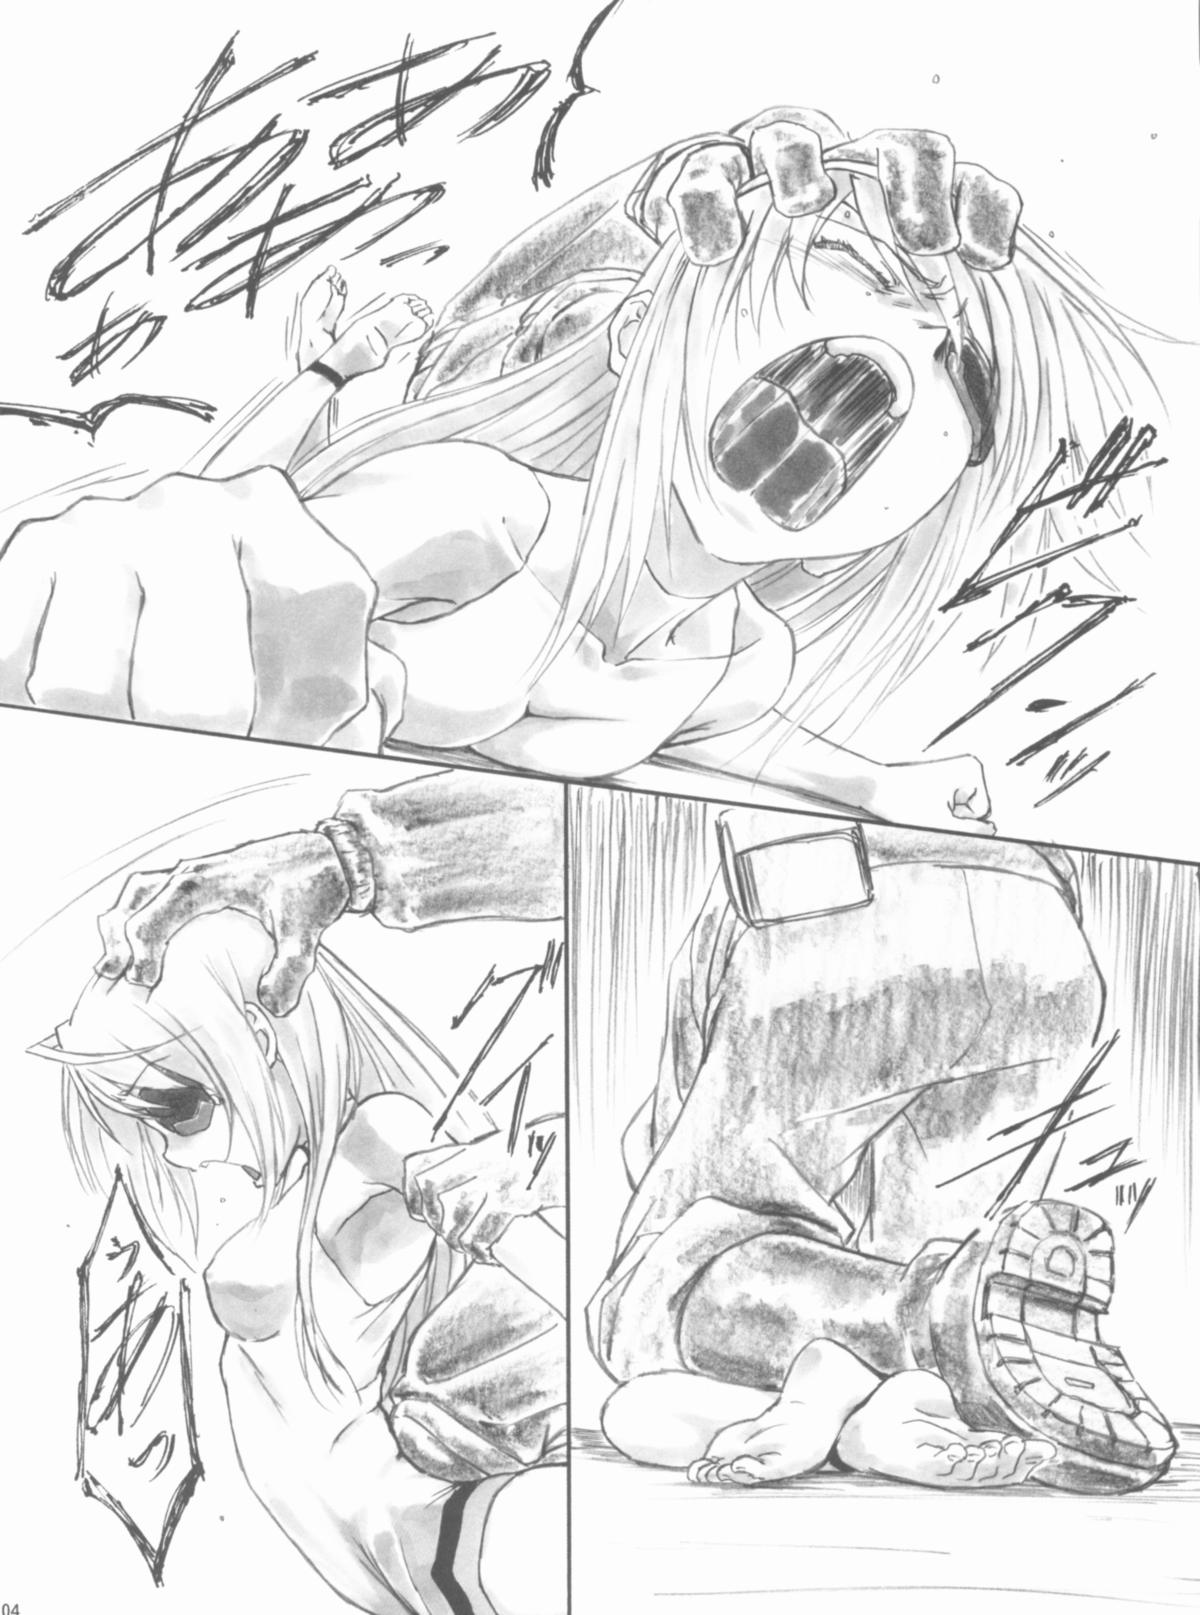 [AXZ (Shinobu Akira)] Angel's stroke 57 Infinite Laura! (IS <Infinite Stratos>) page 5 full